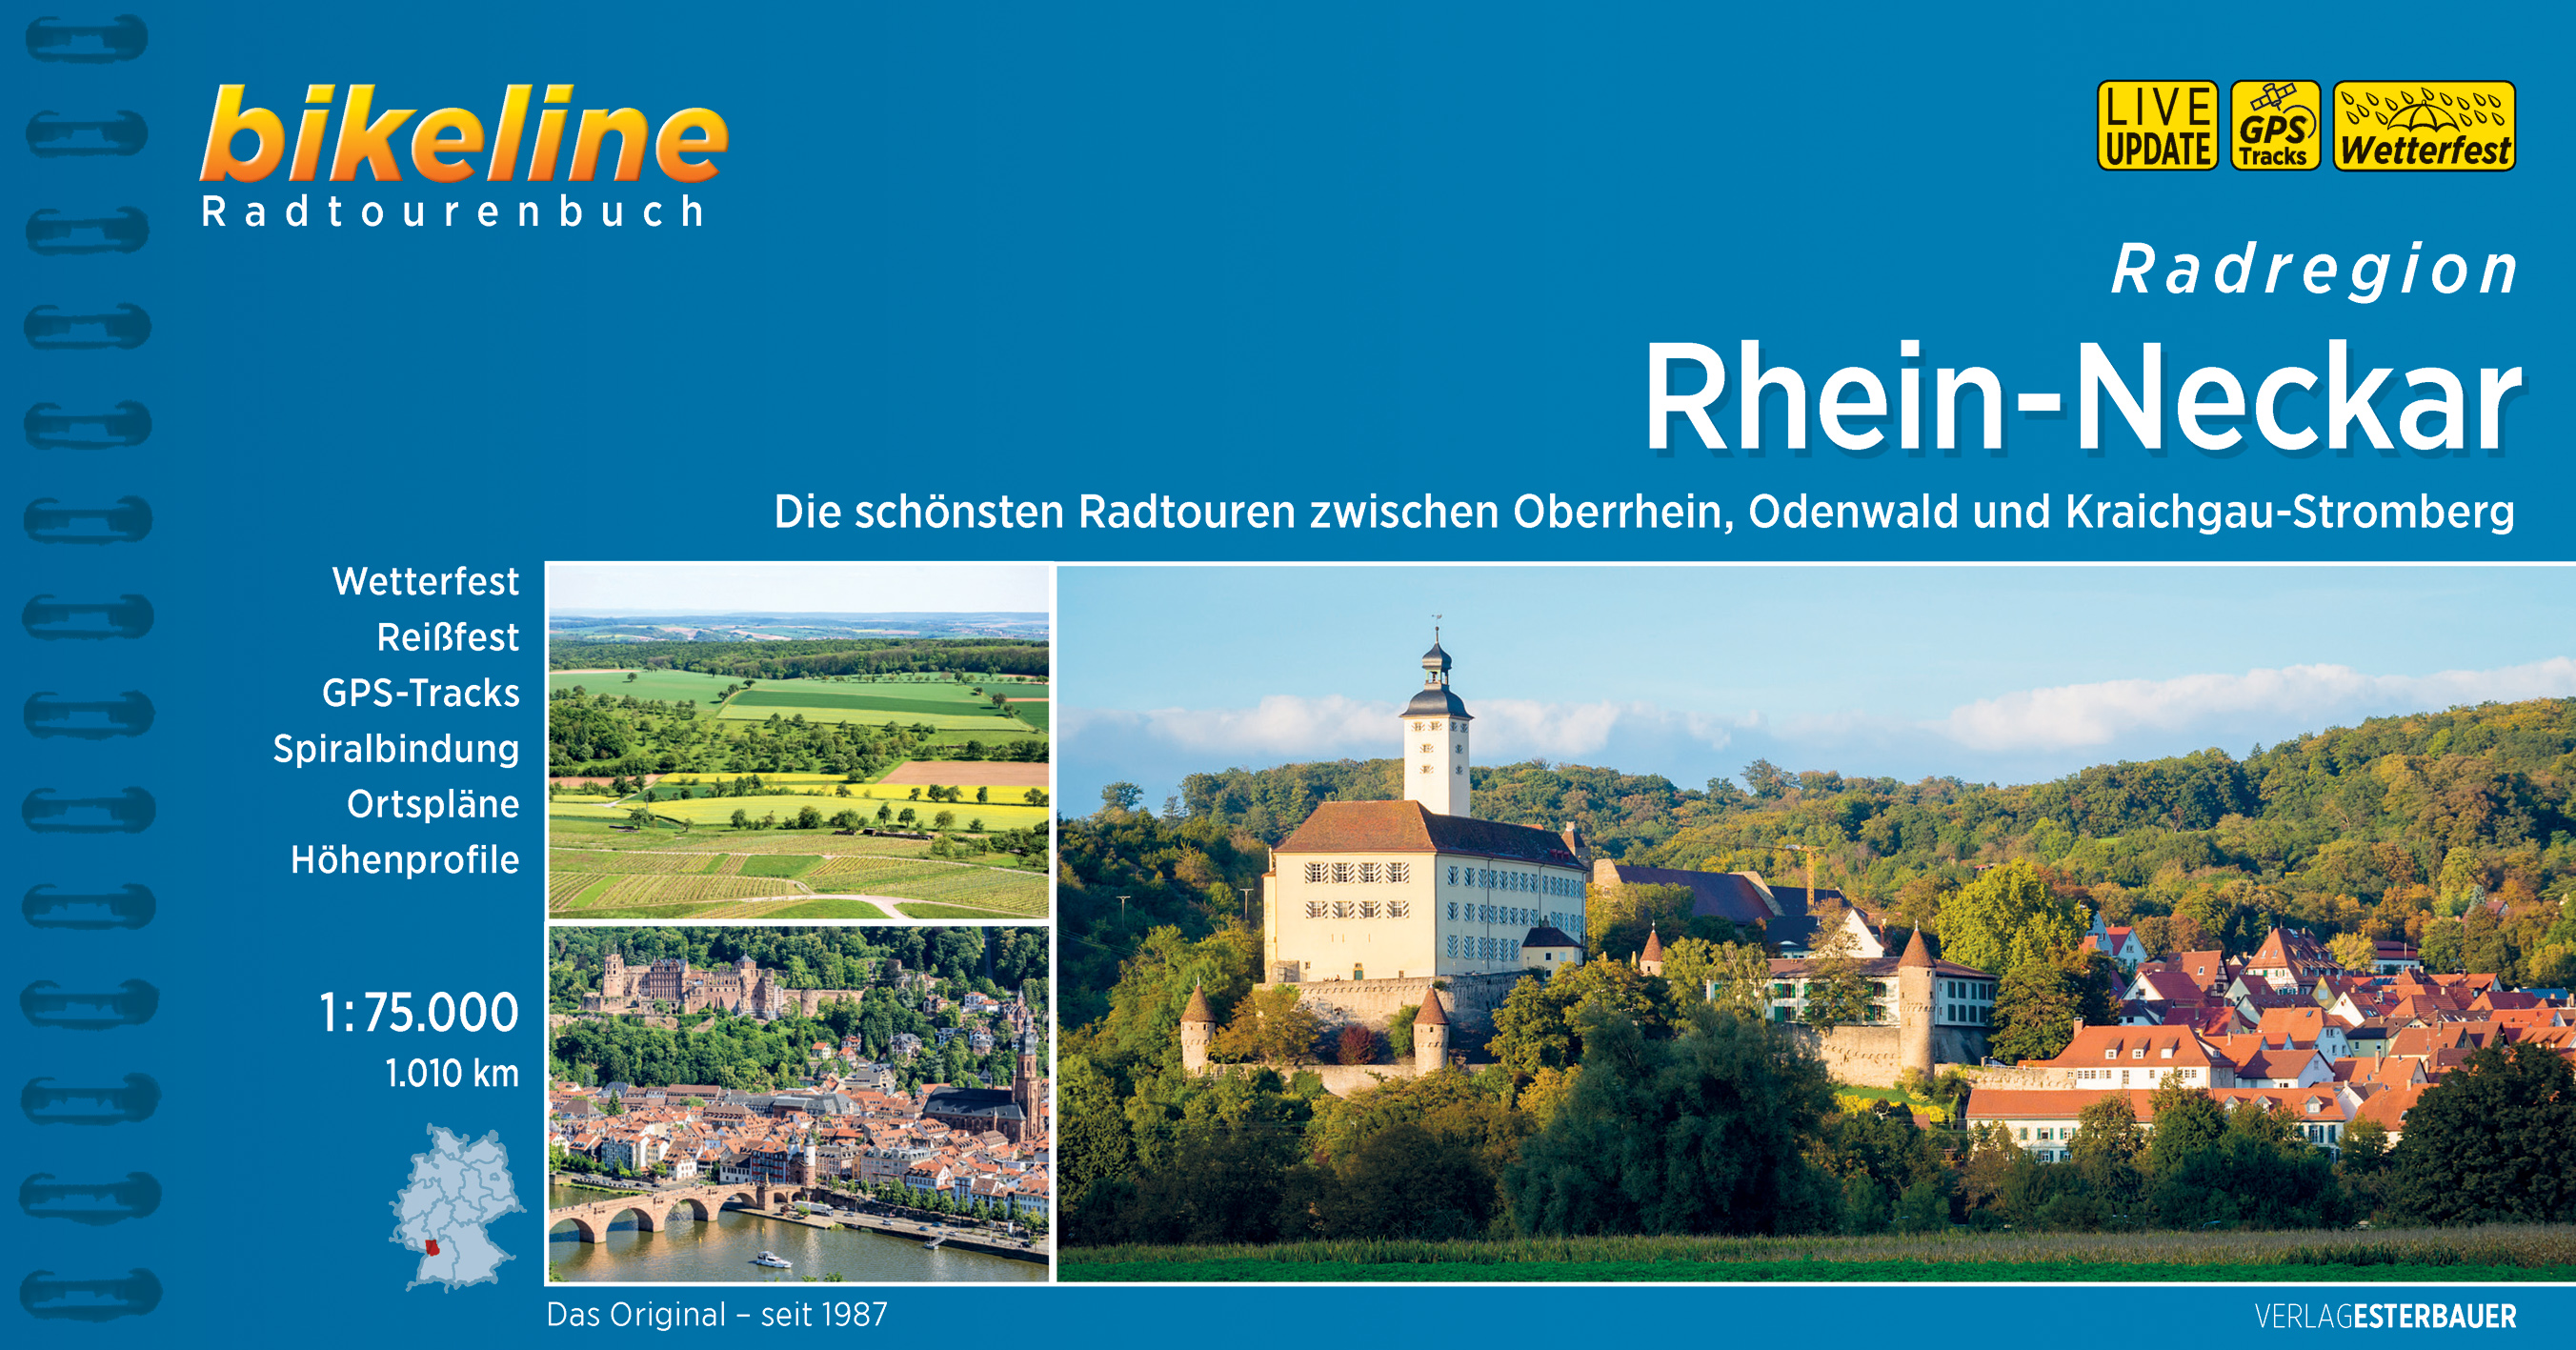 Online bestellen: Fietsgids Bikeline Rhein-Neckar radregion | Esterbauer